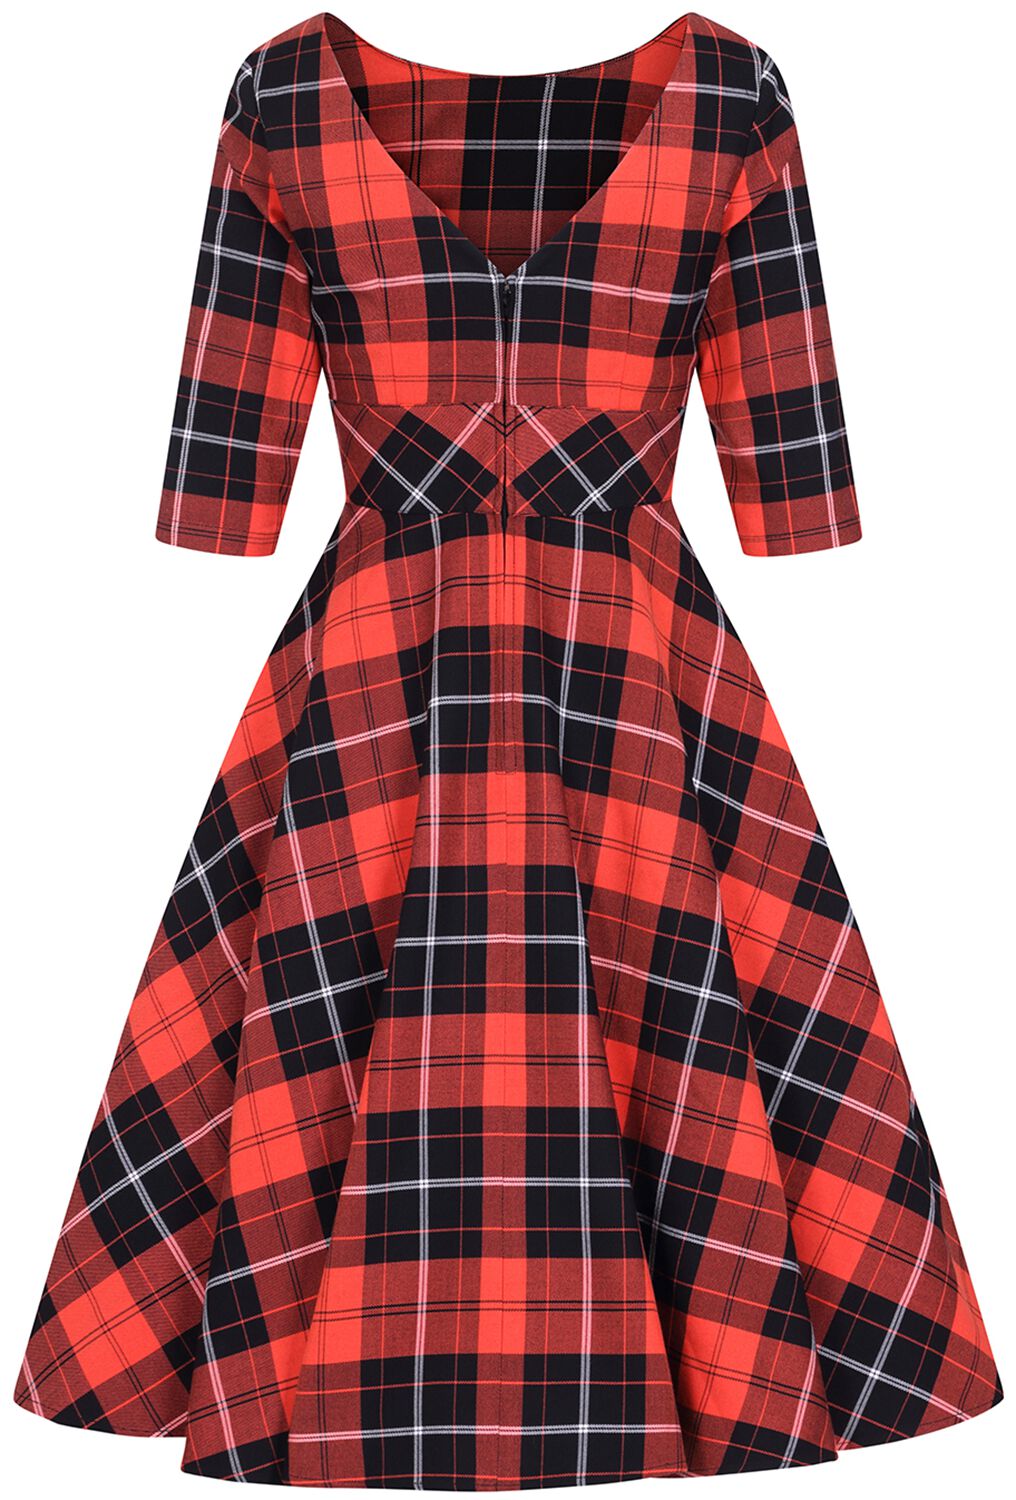 hebben zich vergist chaos Seizoen Clementine jaren 50 jurk | Hell Bunny Medium-lengte jurk | Large